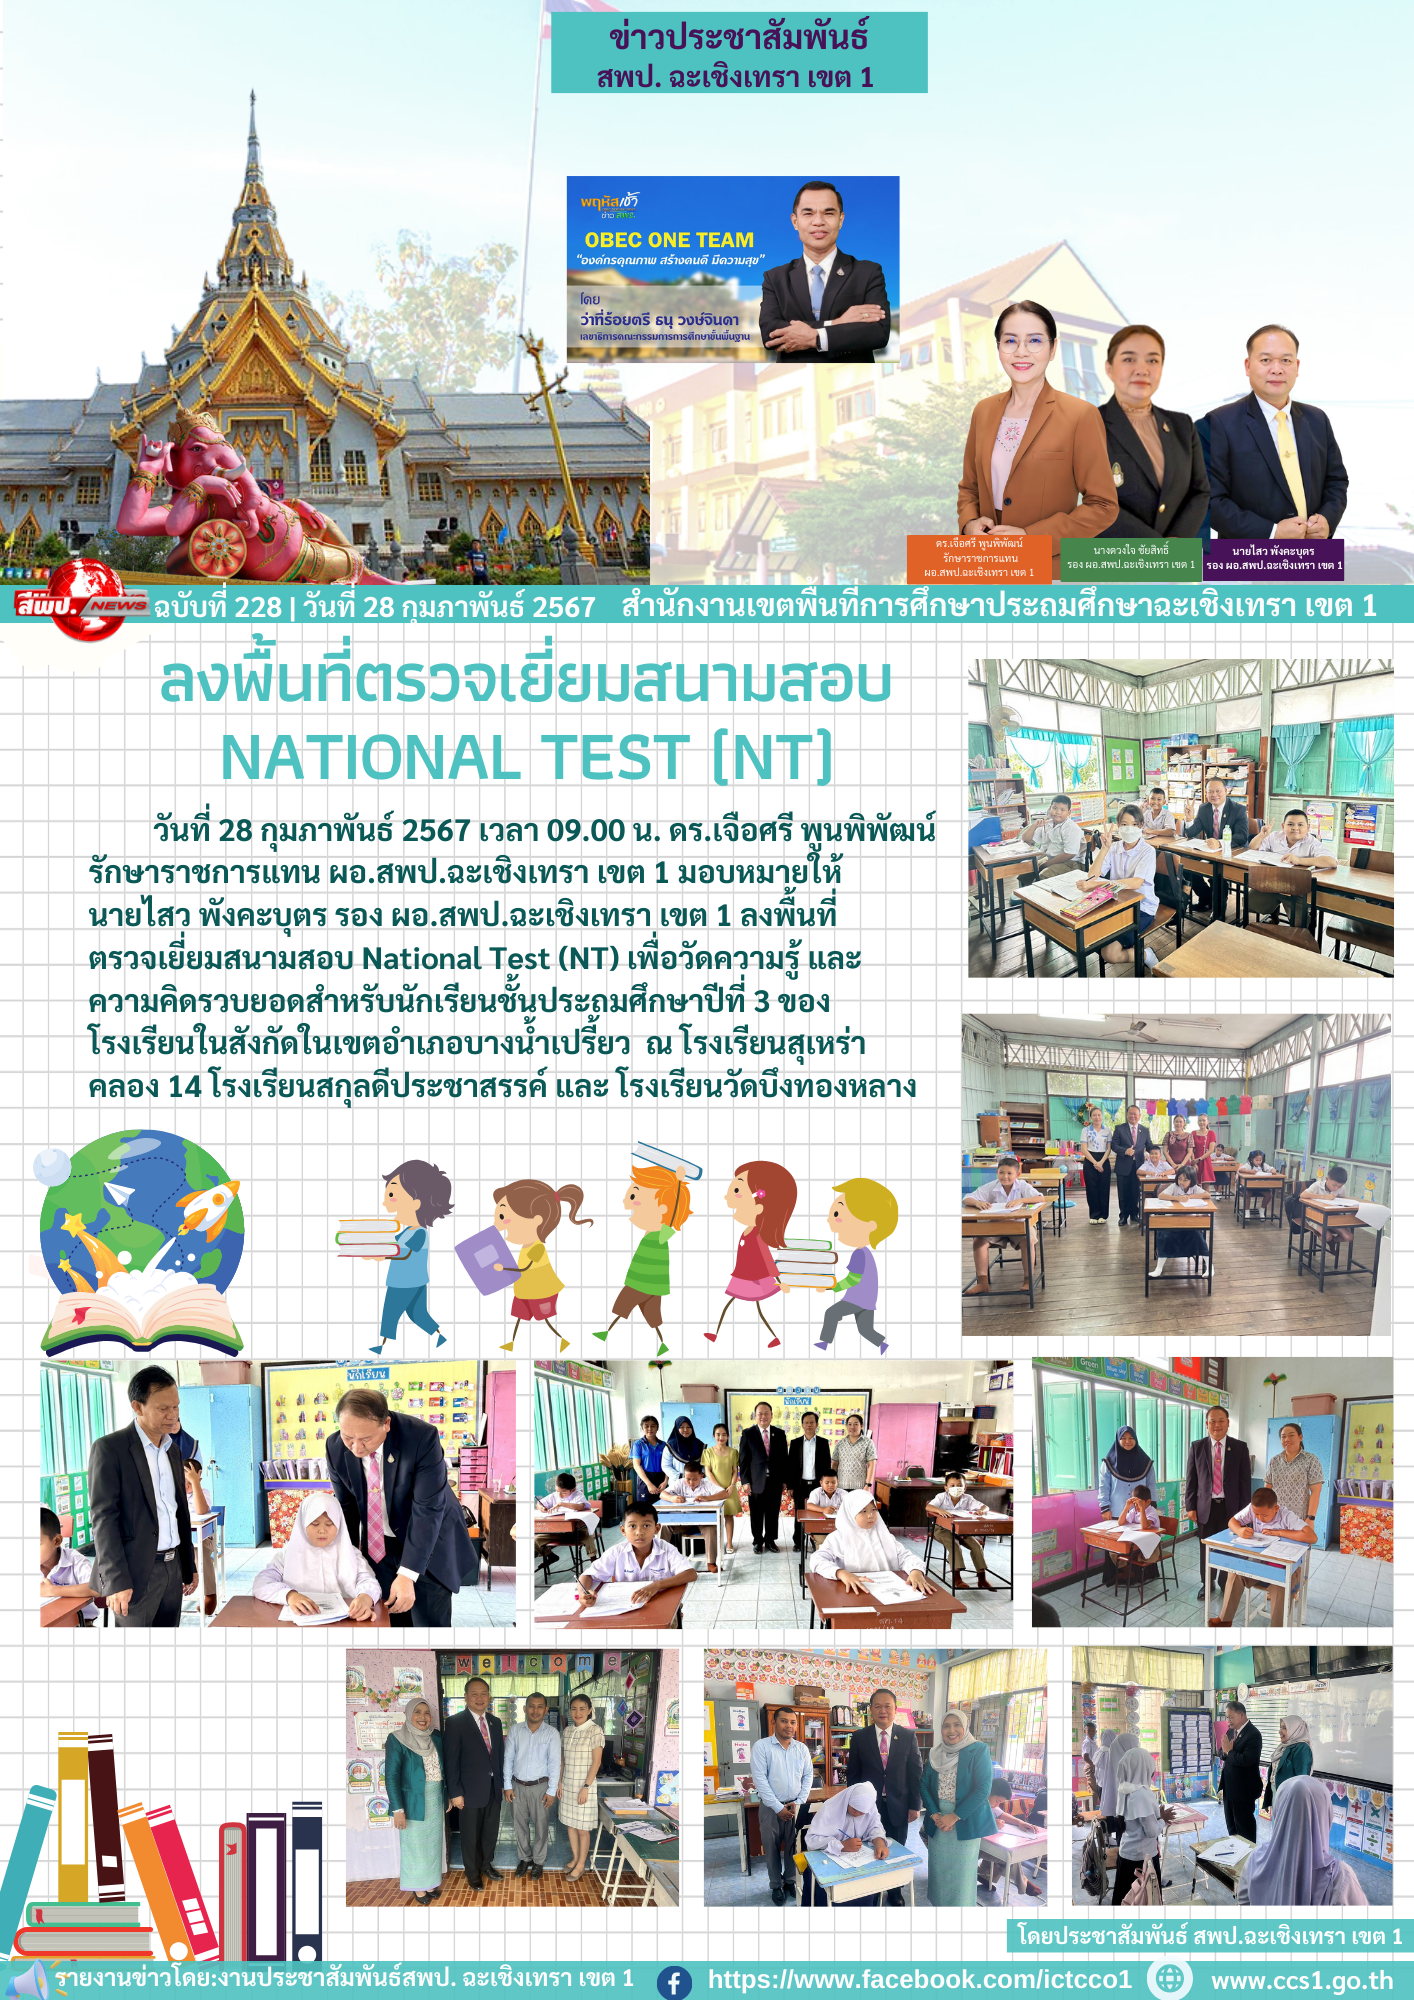  ลงพื้นที่ตรวจเยี่ยมสนามสอบ National Test (NT) 